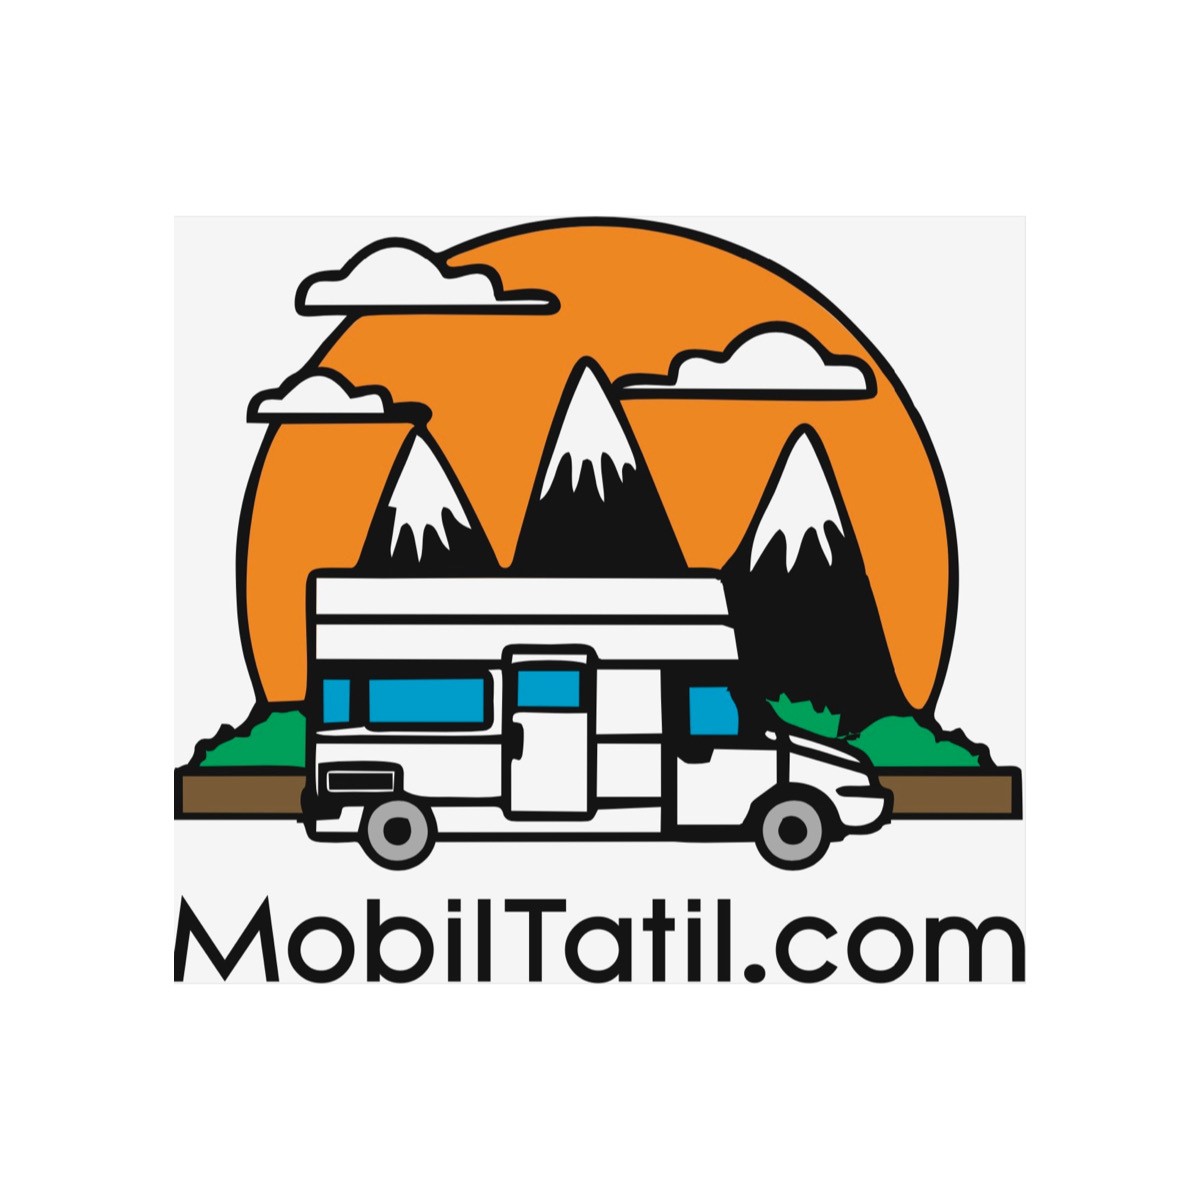 MobilTatil.com kimdir?